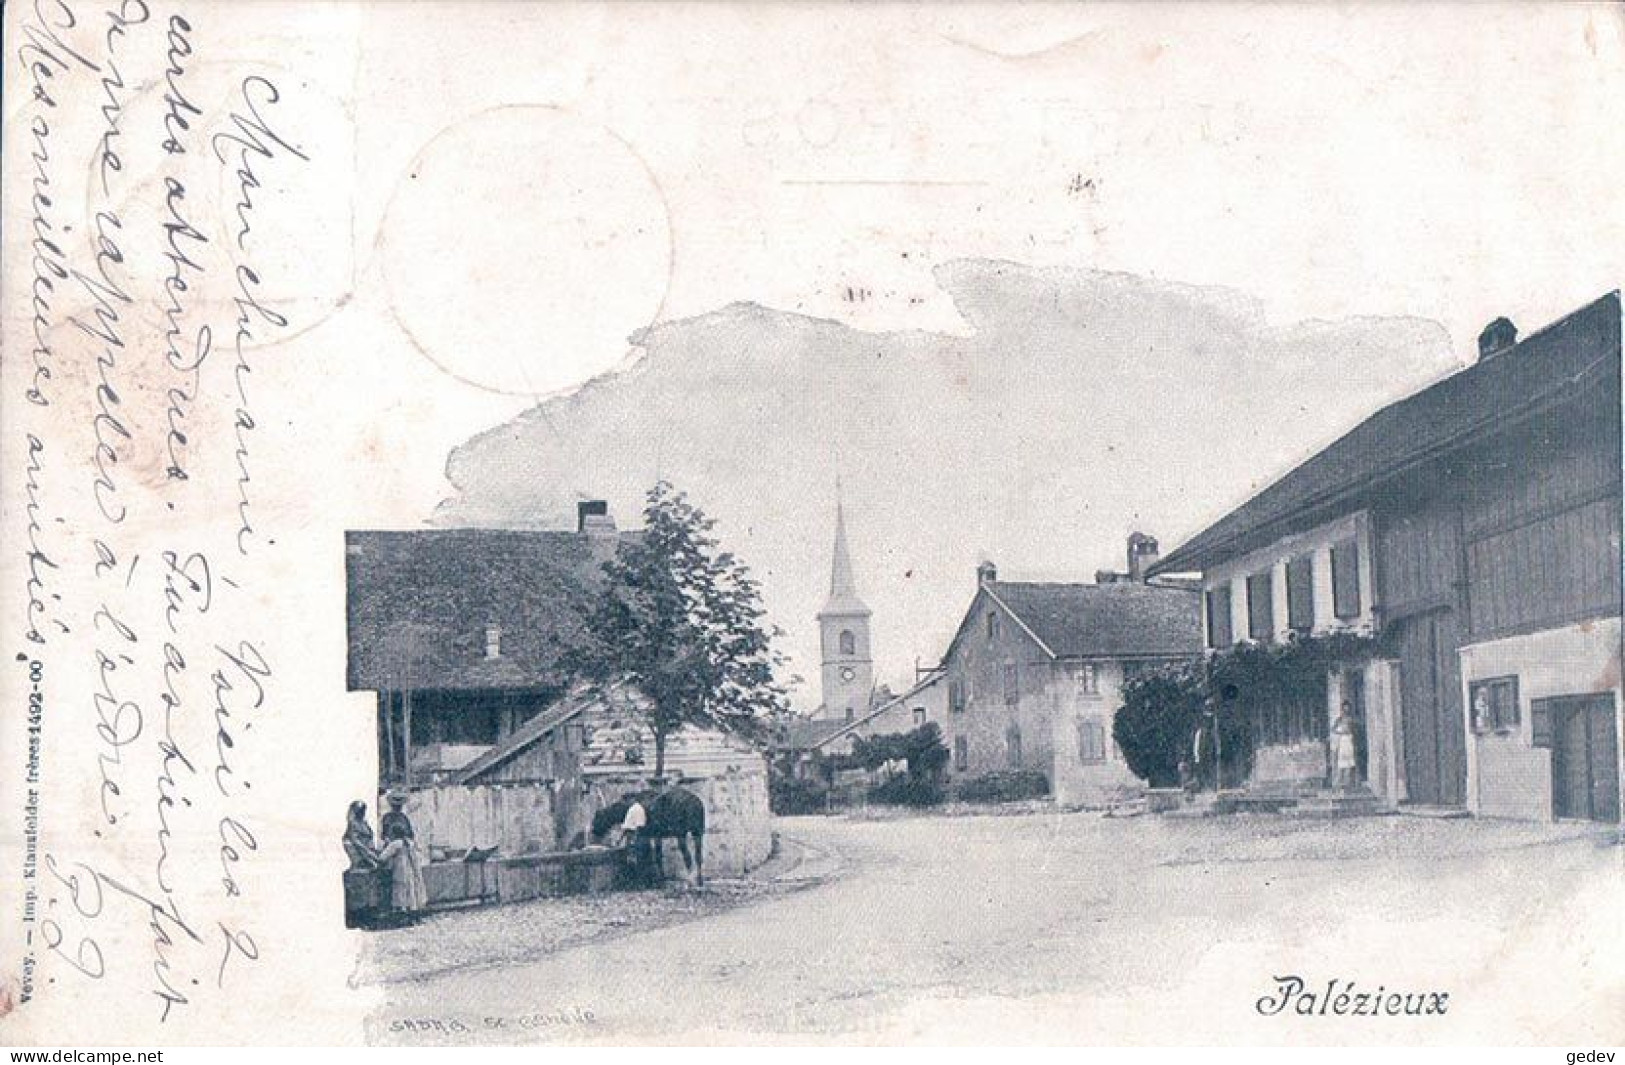 Palézieux VD, Cheval à La Fontaine (15.11.1901) - Palézieux